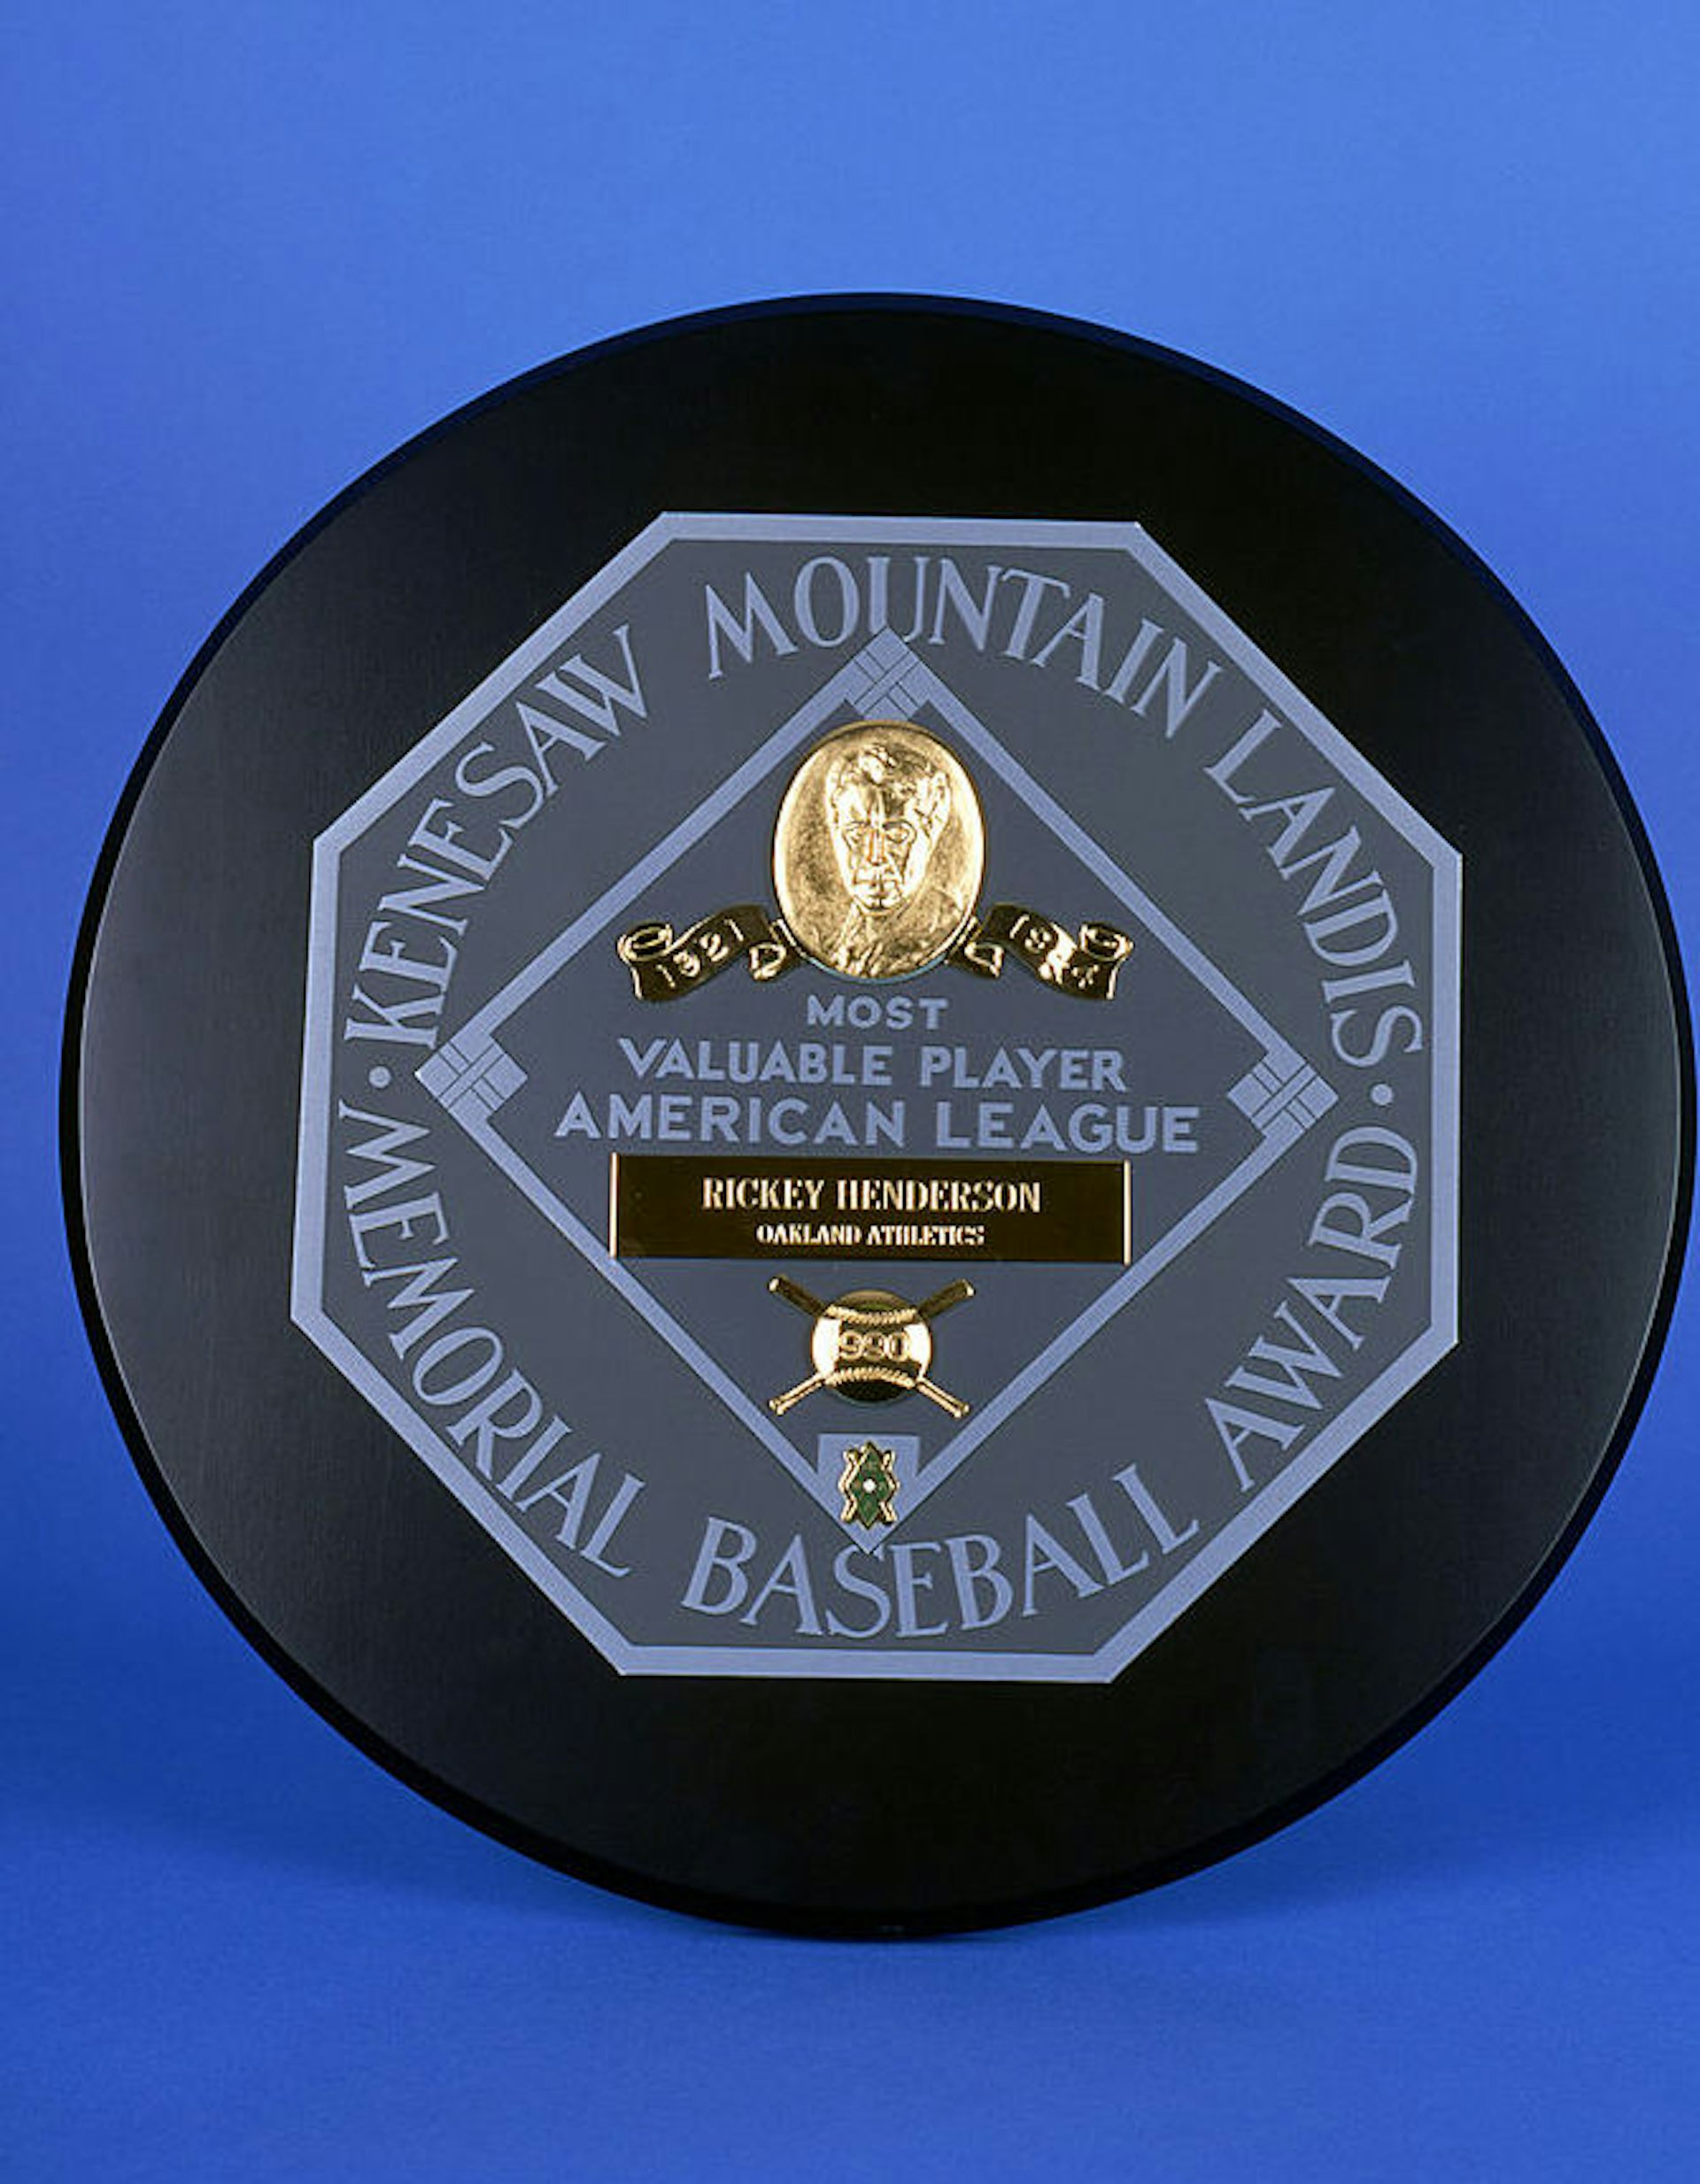 オークランド-アスレチックス外野手リッキー-ヘンダーソンに授与され、1990年のアメリカンリーグ最優秀選手賞にはケネソー-マウンテン-ランディスの名前が選ばれている。